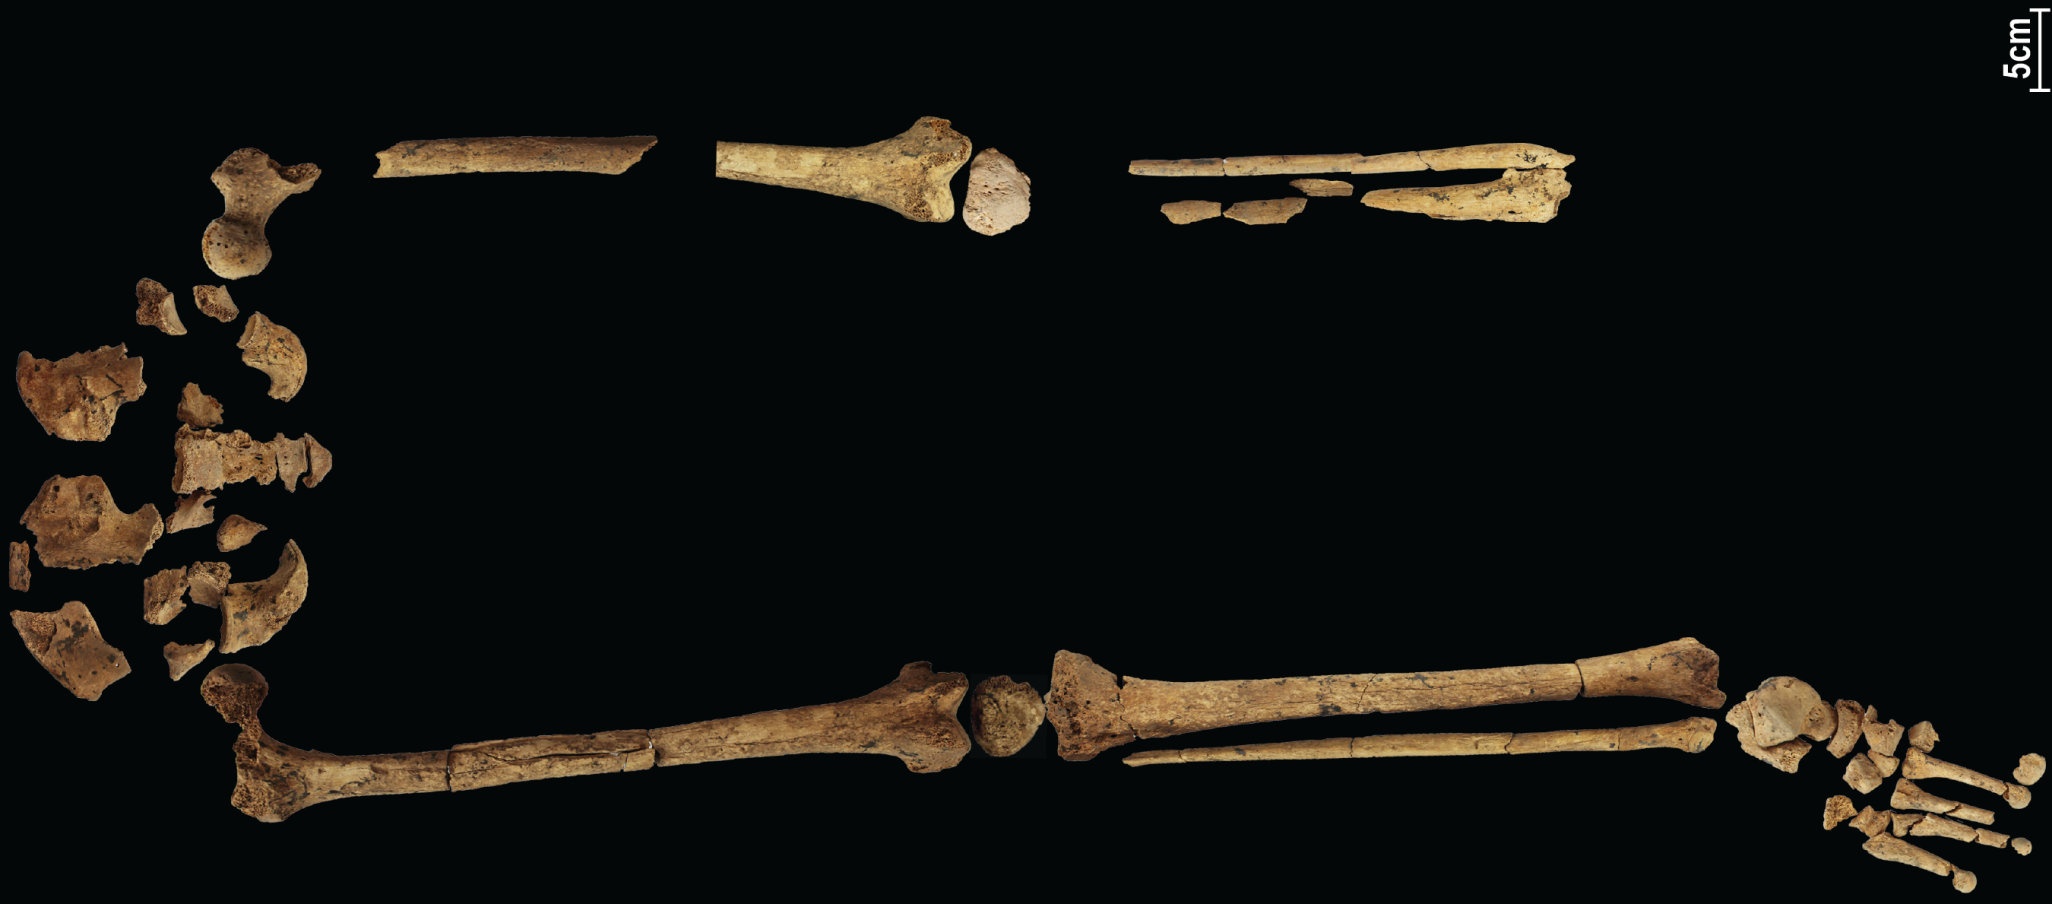 31,000 3 let stará kostra zobrazující nejstarší známou komplexní operaci by mohla přepsat historii! XNUMX